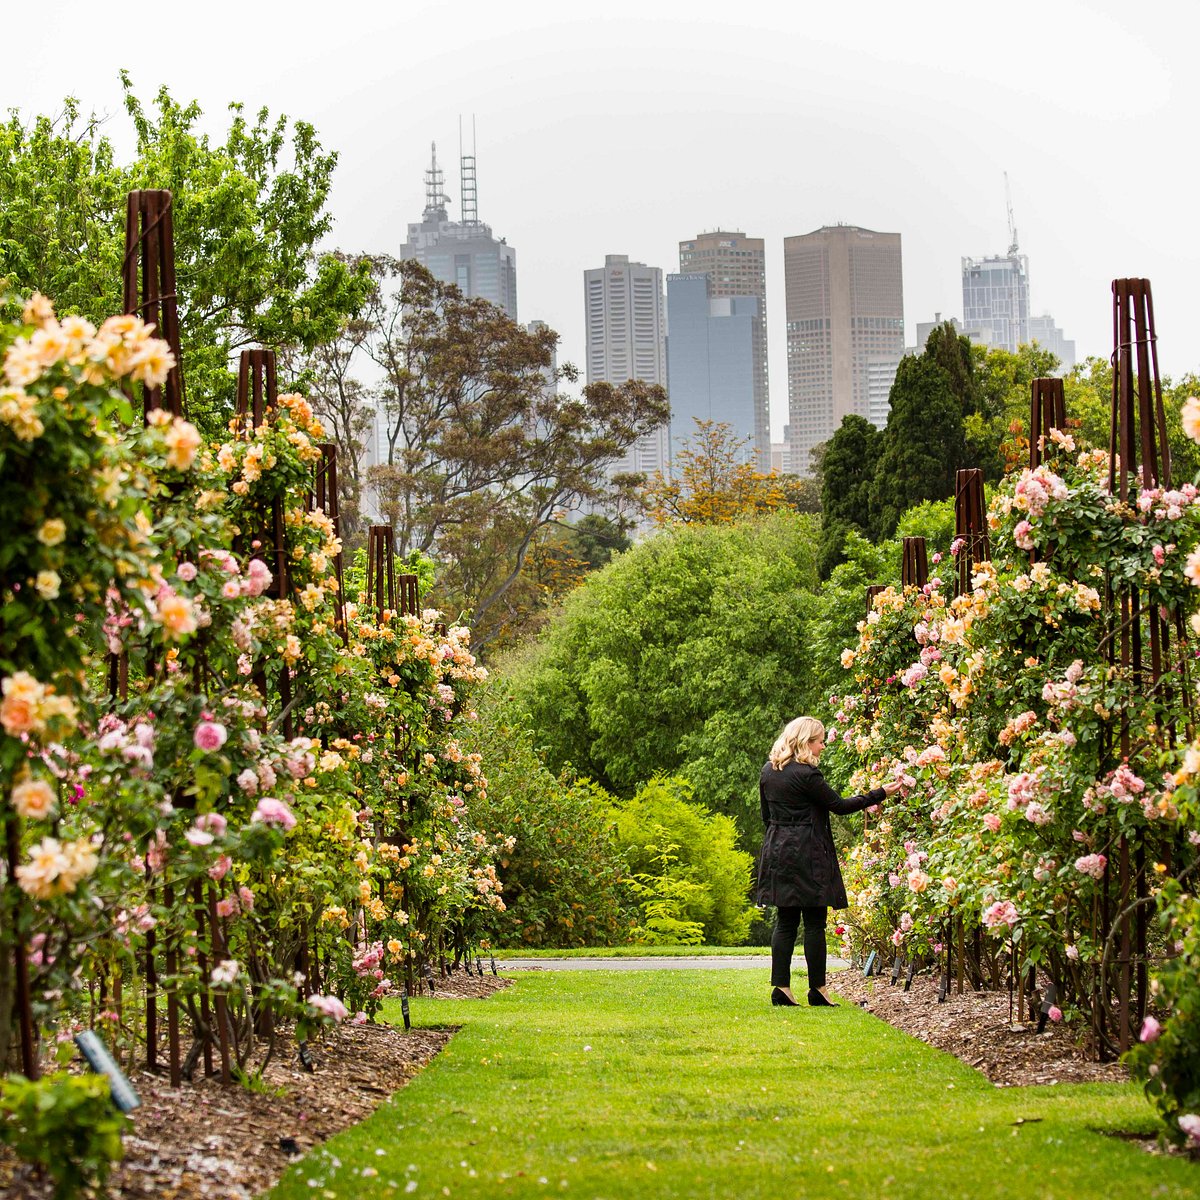 Royal Botanic Gardens Melbourne 2022 Lohnt es sich? (Mit fotos)